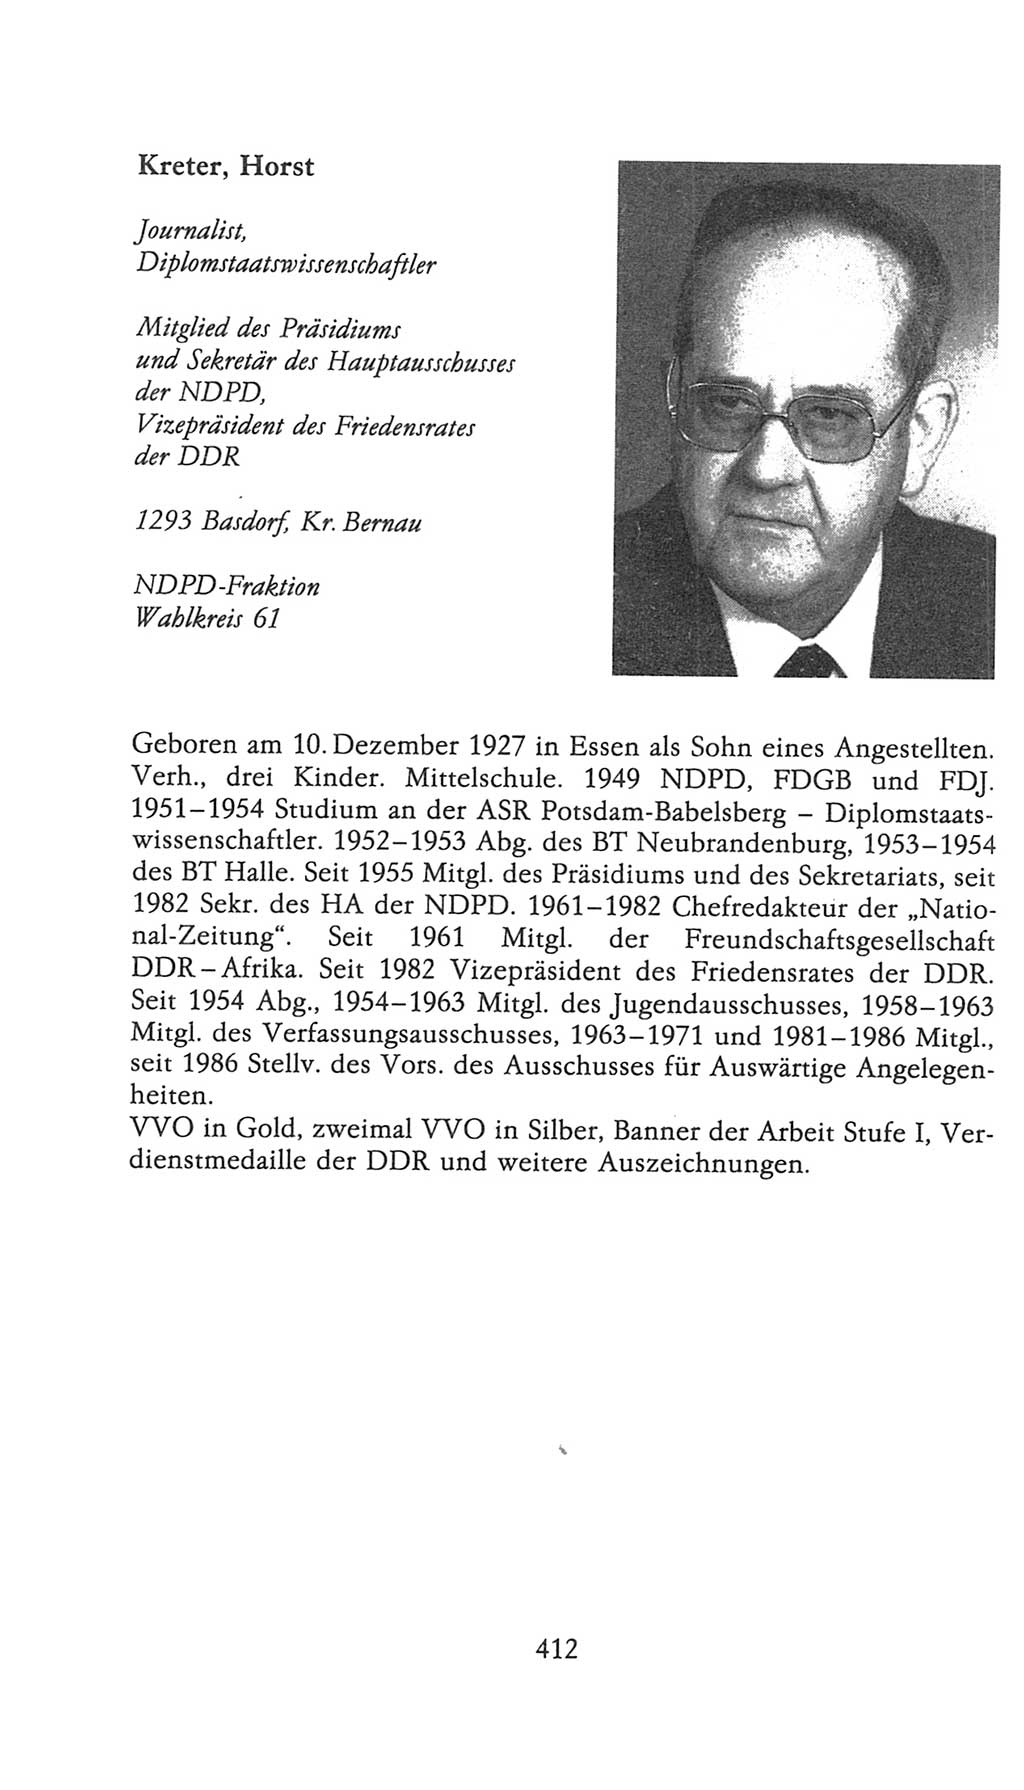 Volkskammer (VK) der Deutschen Demokratischen Republik (DDR), 9. Wahlperiode 1986-1990, Seite 412 (VK. DDR 9. WP. 1986-1990, S. 412)